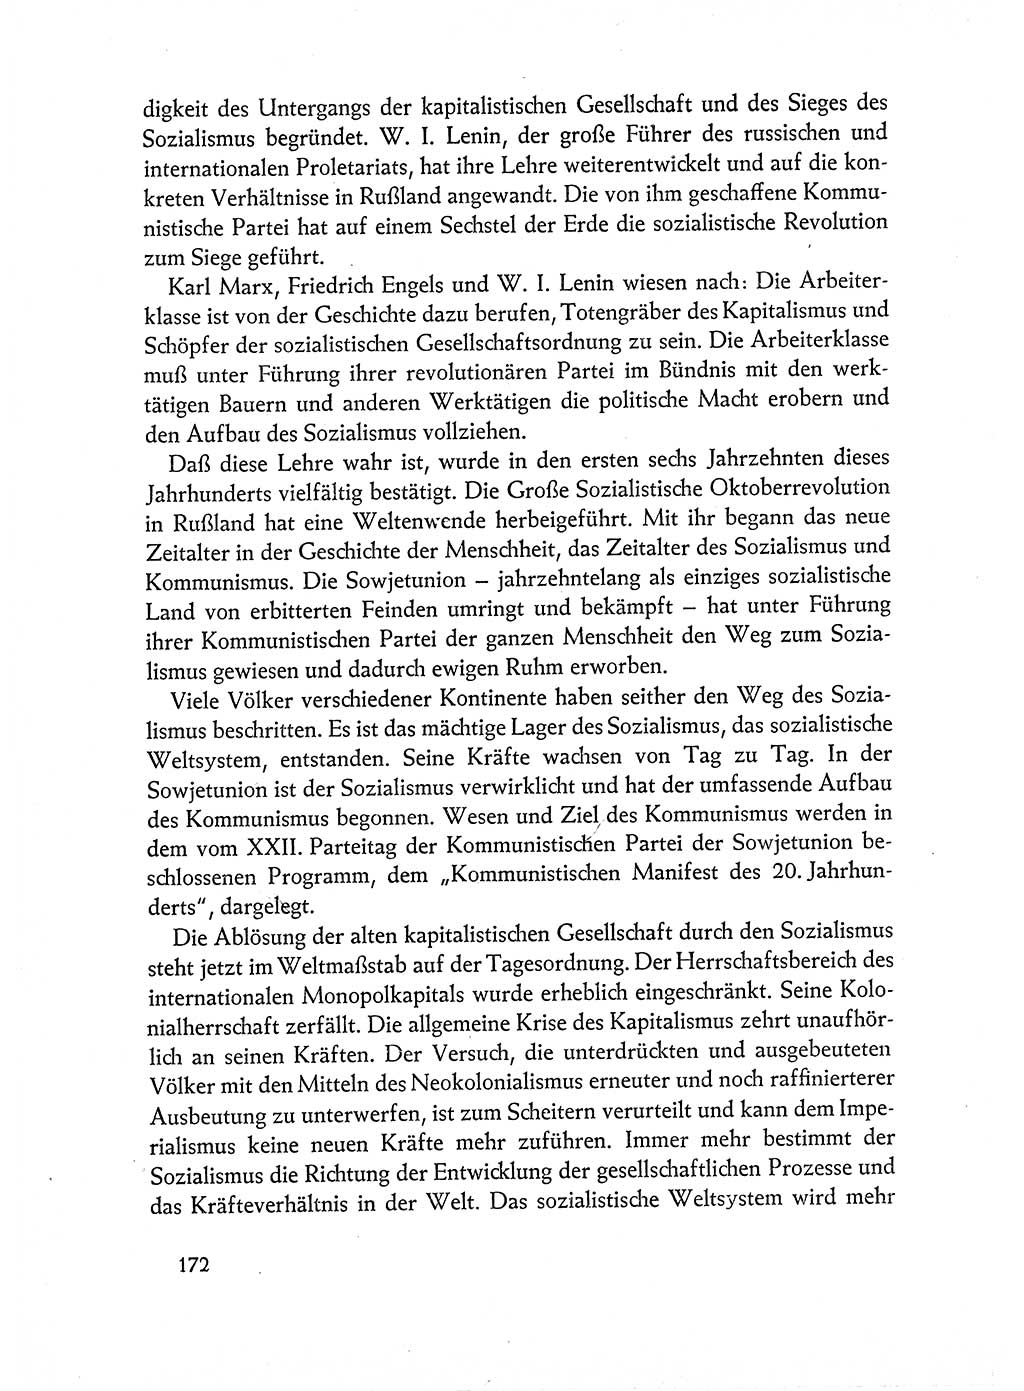 Dokumente der Sozialistischen Einheitspartei Deutschlands (SED) [Deutsche Demokratische Republik (DDR)] 1962-1963, Seite 172 (Dok. SED DDR 1962-1963, S. 172)